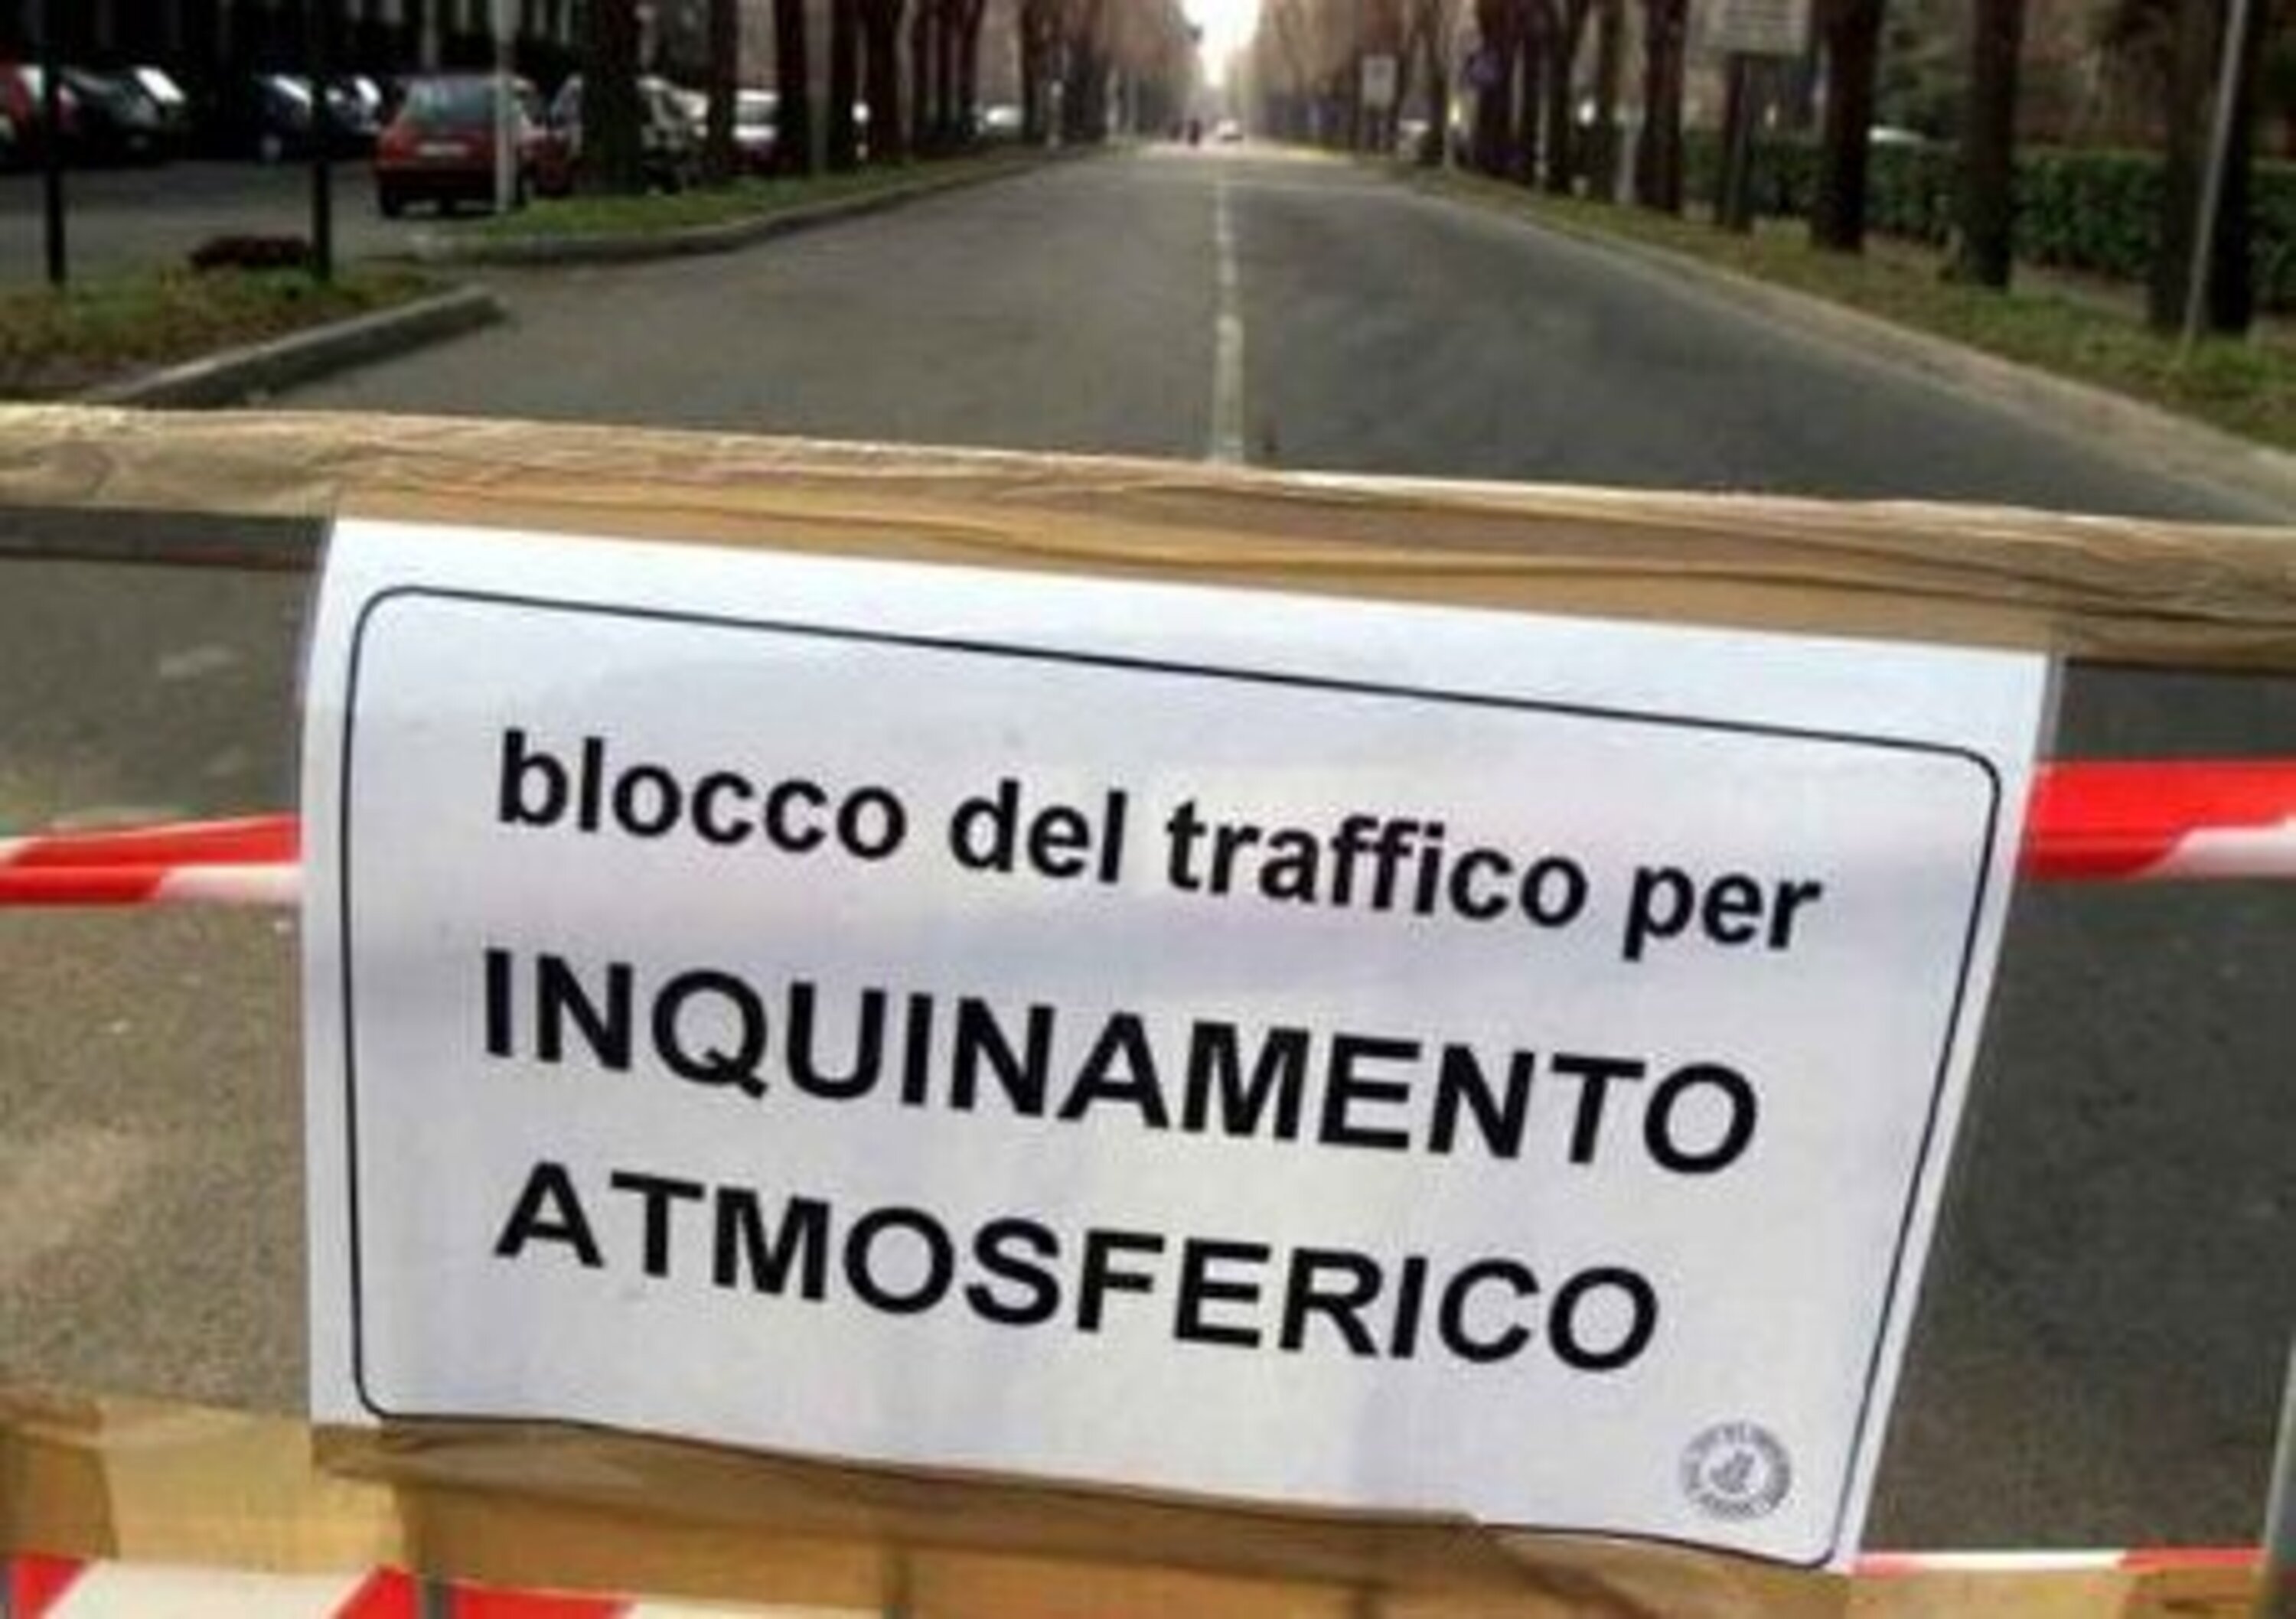 Inquinamento a Roma: blocco del traffico domenica 17 gennaio?